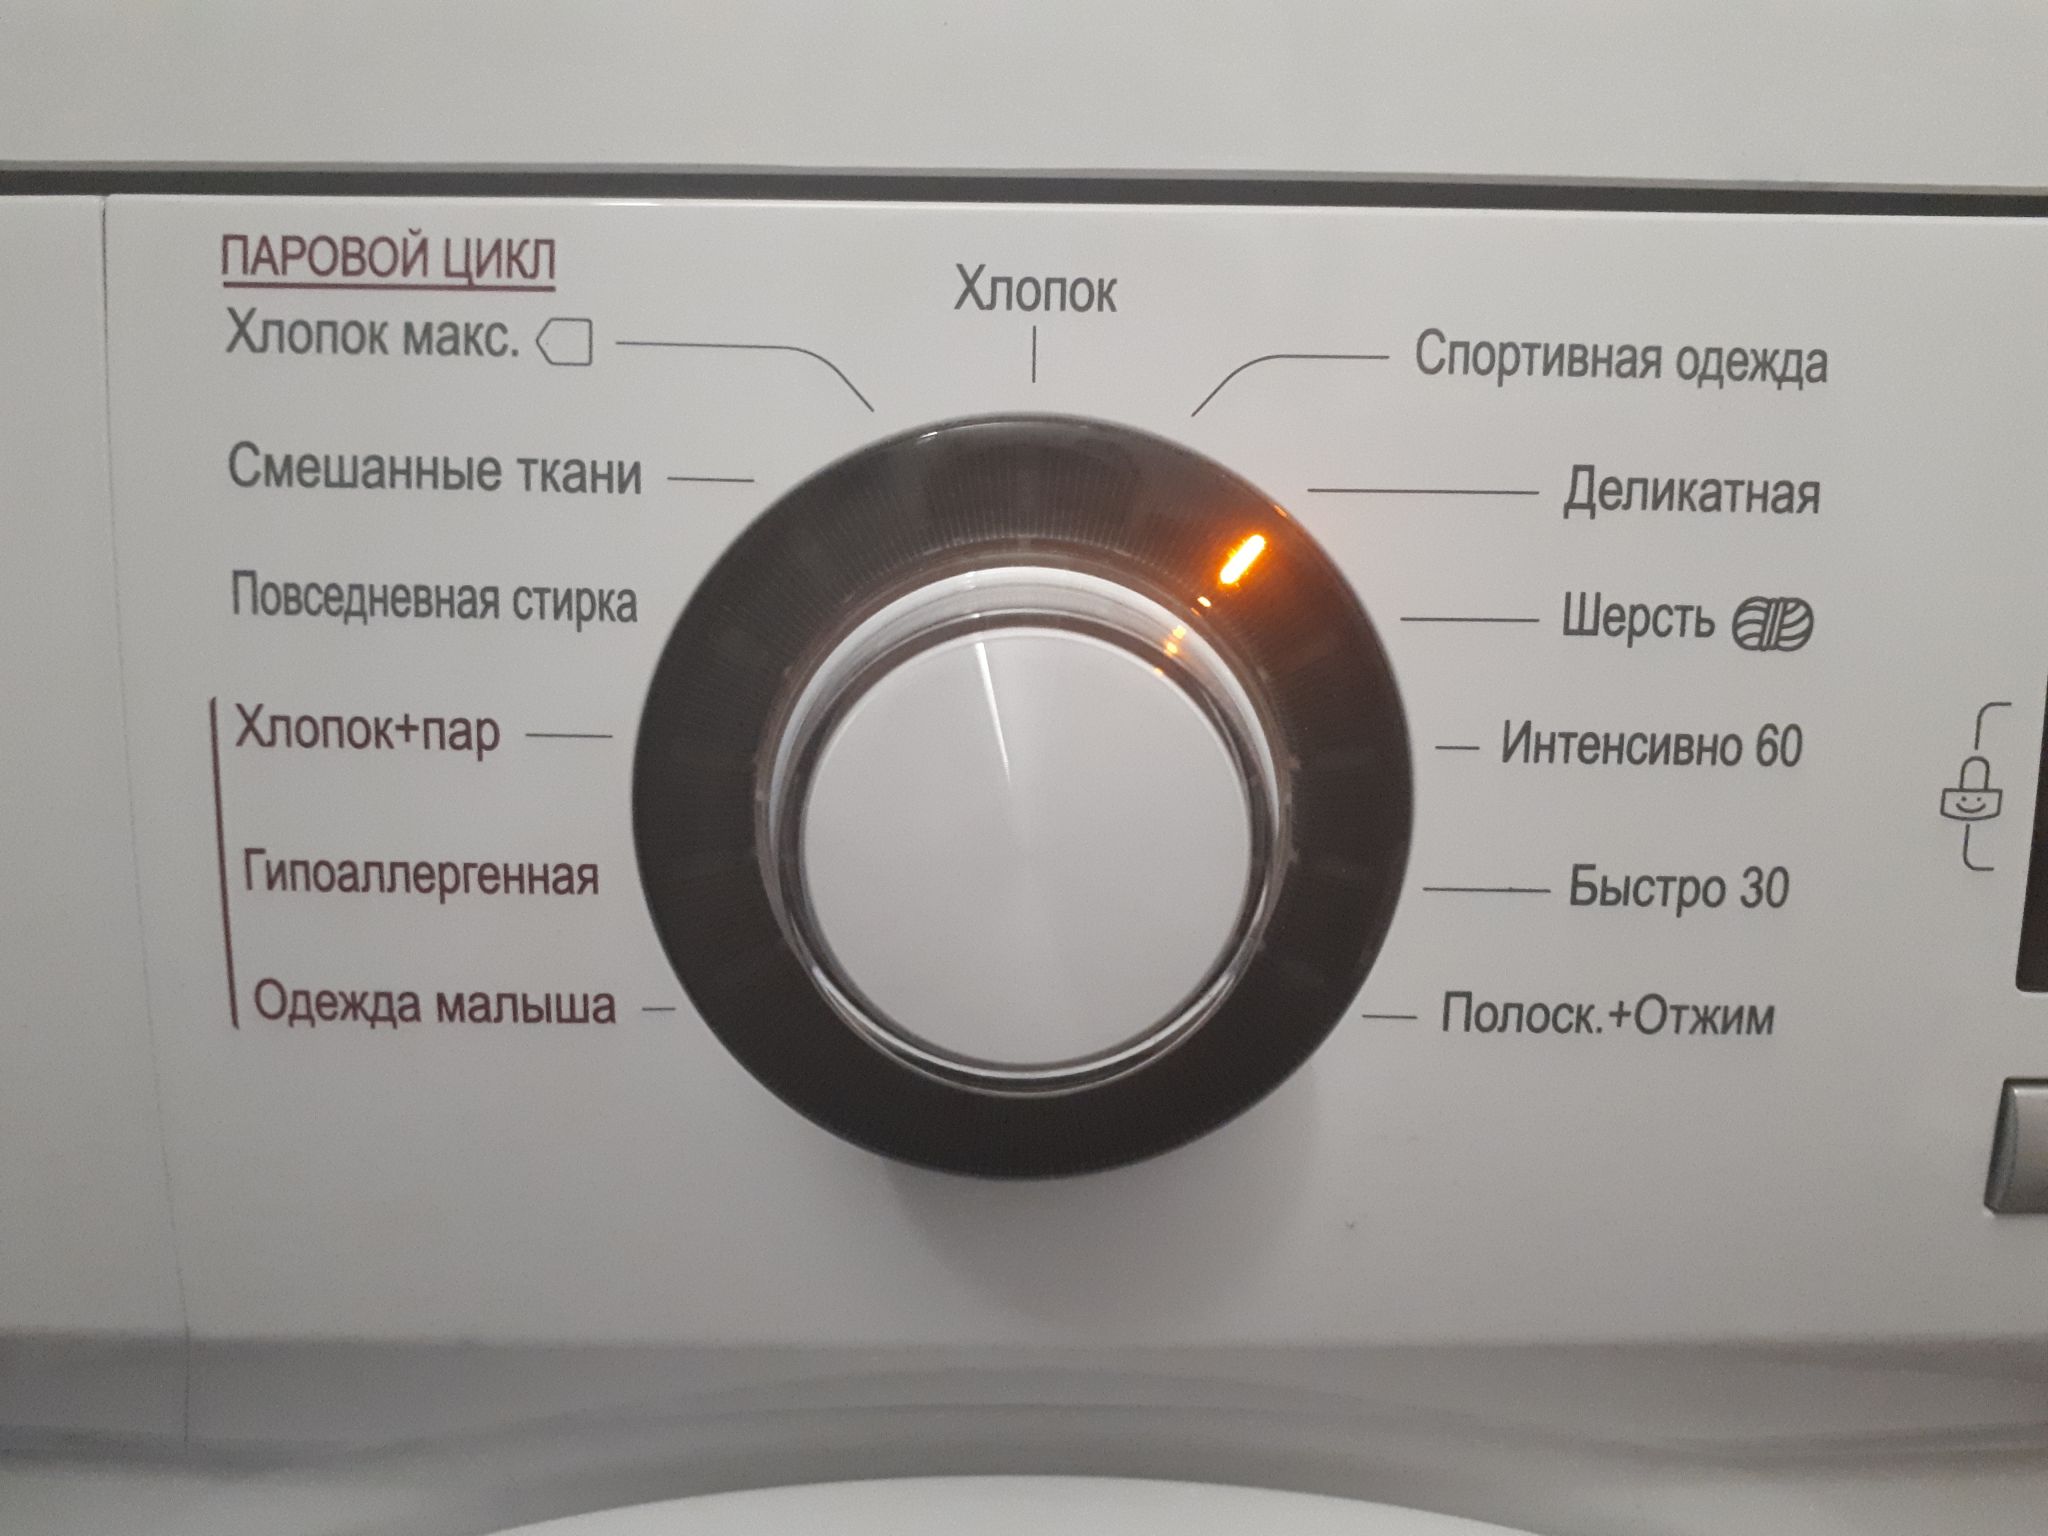 функция пара в стиральной машине steam что это такое фото 103